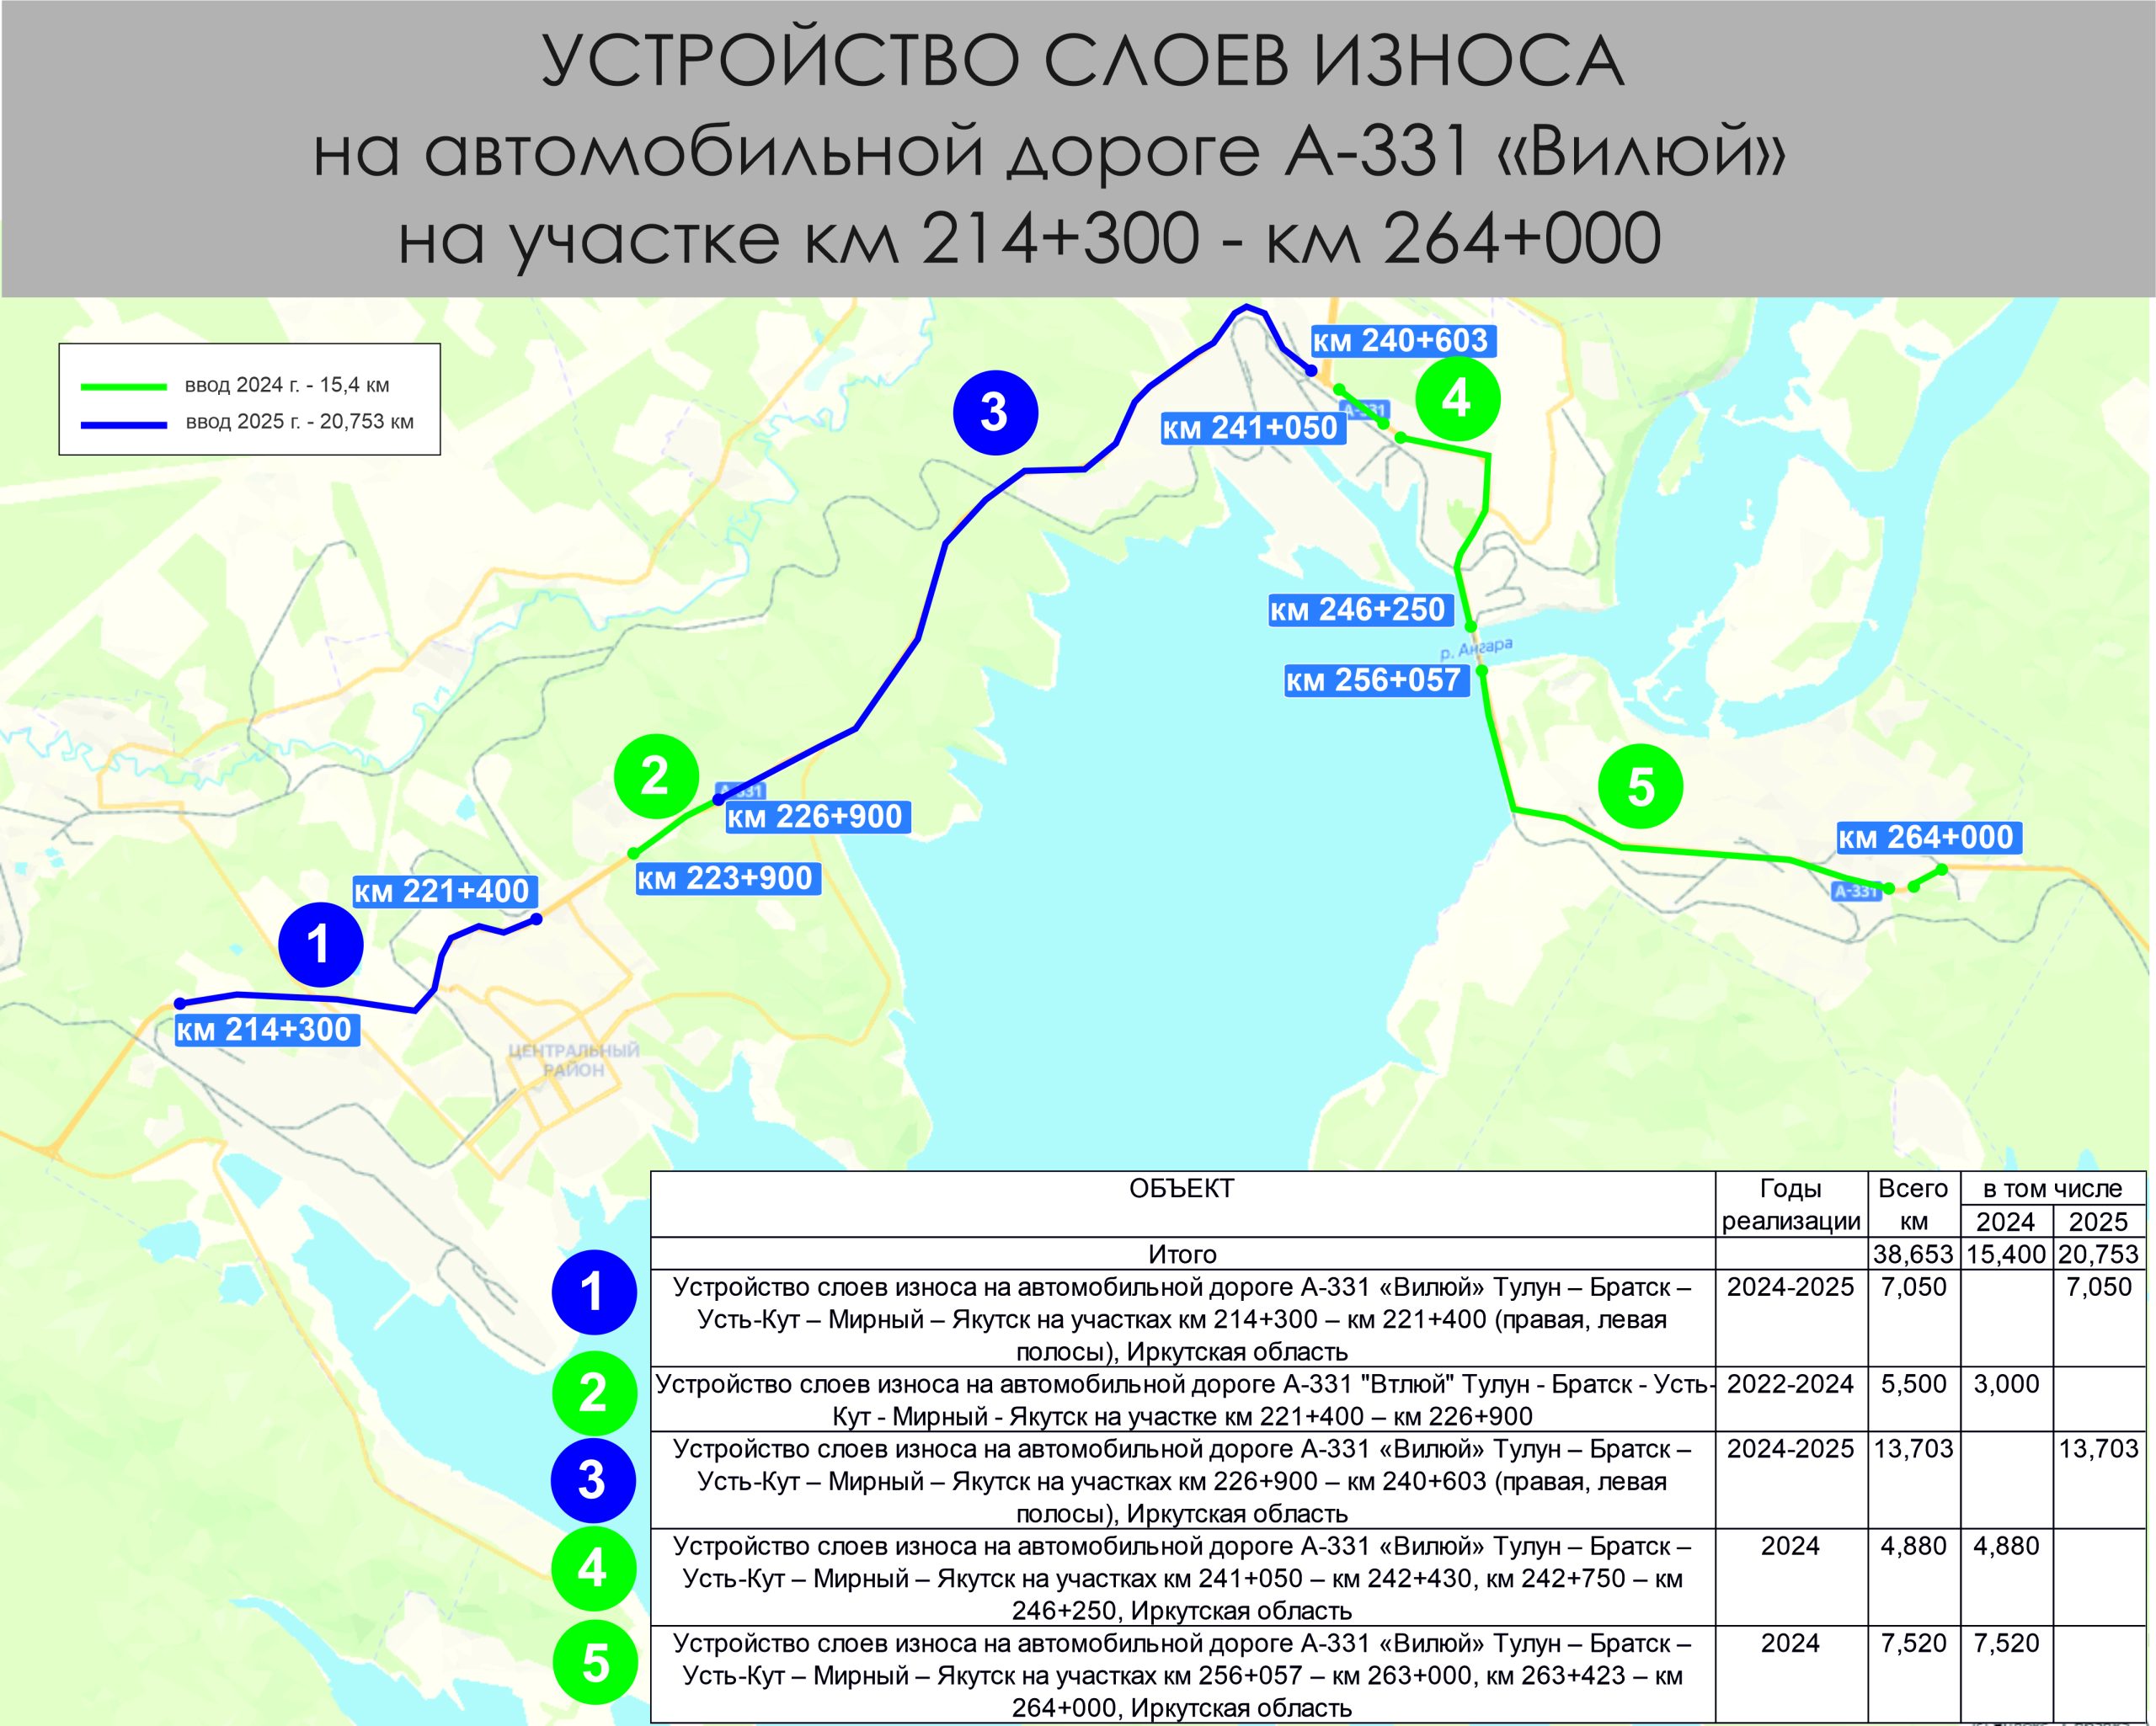 Участки федеральной трассы А-331 "Вилюй" отремонтируют в Братске в 2024 году